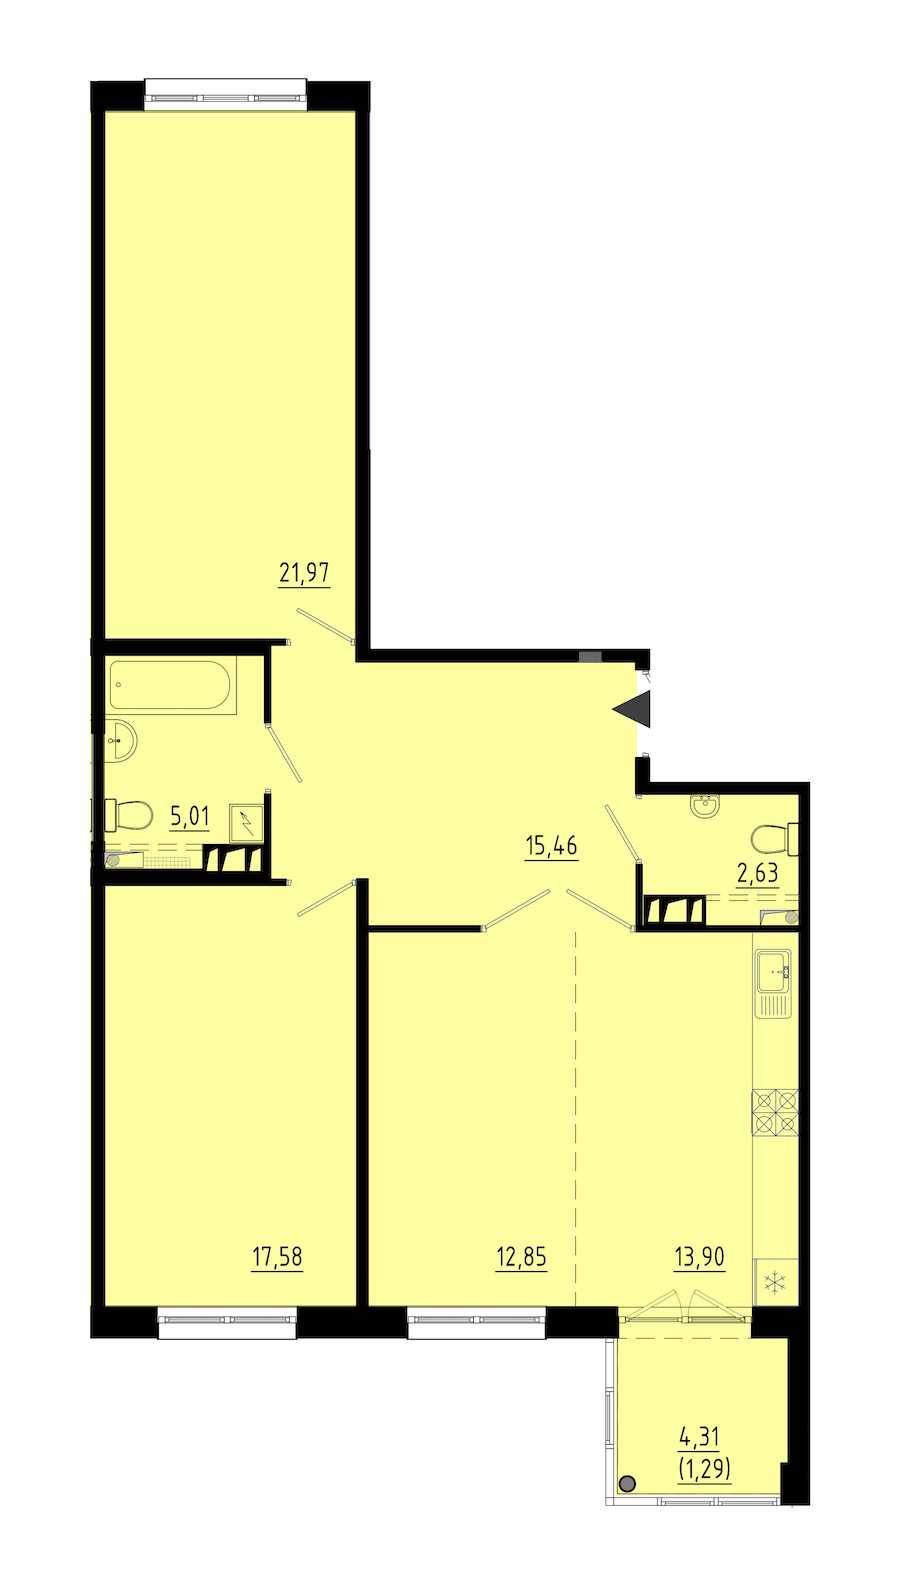 Двухкомнатная квартира в : площадь 89.9 м2 , этаж: 1 – купить в Санкт-Петербурге